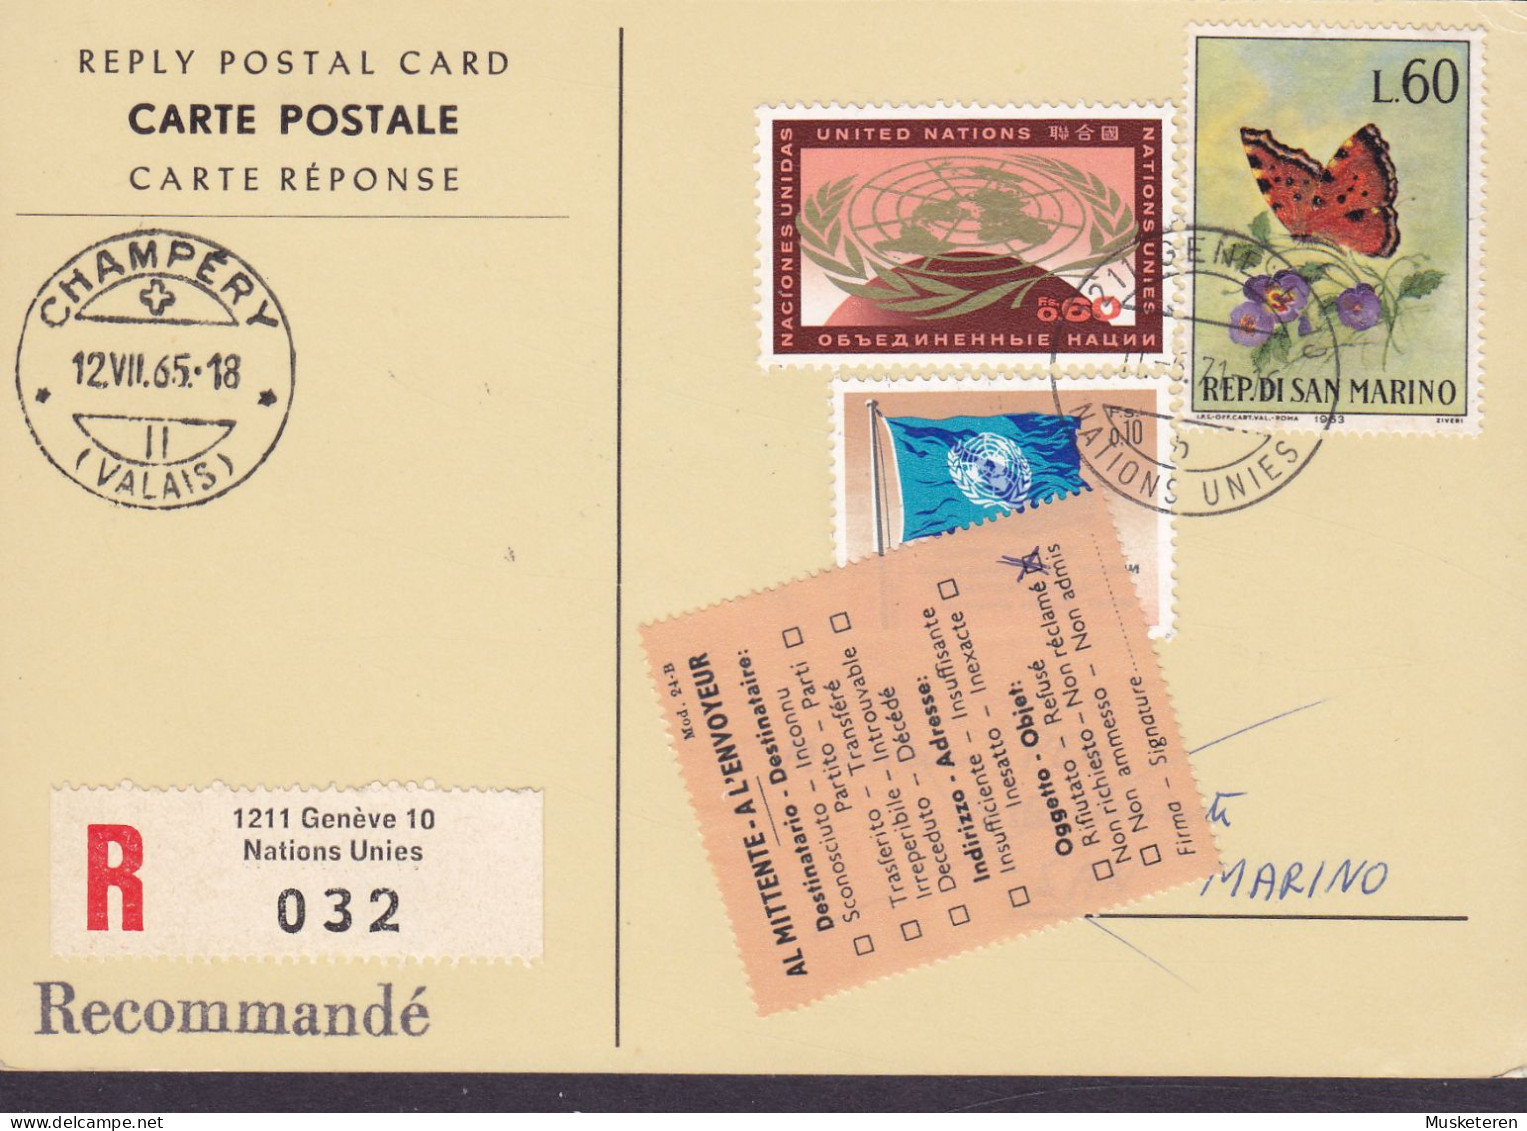 United Nations Reply Postal Card Recommandé Label GENÉVE 1971 SAN MARINO 'Non Réclamé' Vignette Butterfly Papillon - Lettres & Documents